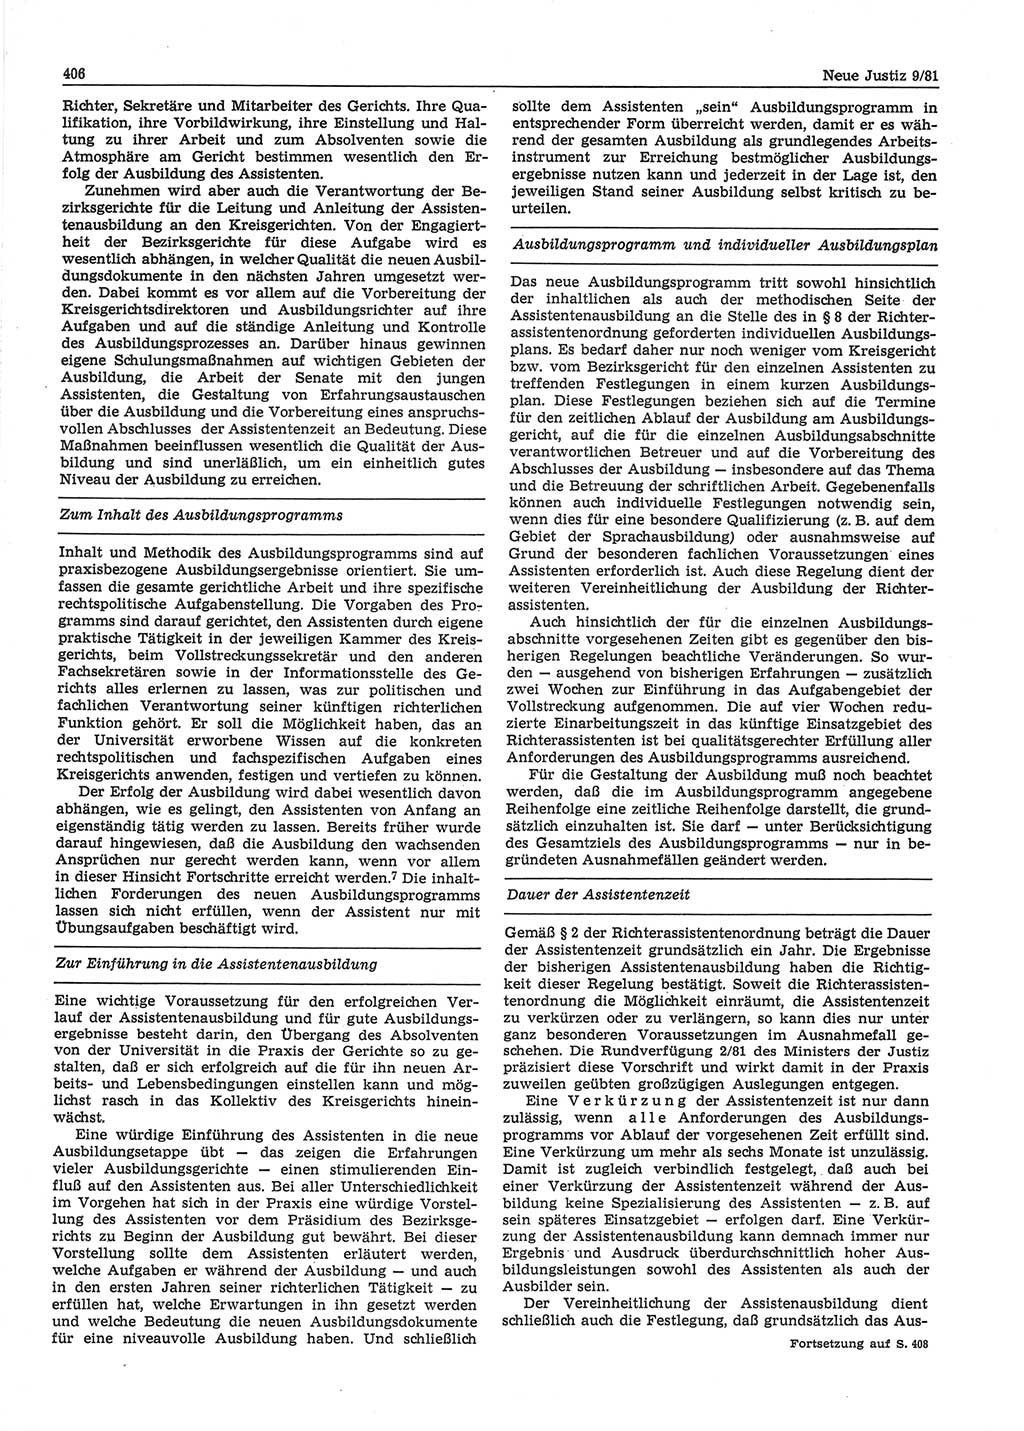 Neue Justiz (NJ), Zeitschrift für sozialistisches Recht und Gesetzlichkeit [Deutsche Demokratische Republik (DDR)], 35. Jahrgang 1981, Seite 406 (NJ DDR 1981, S. 406)